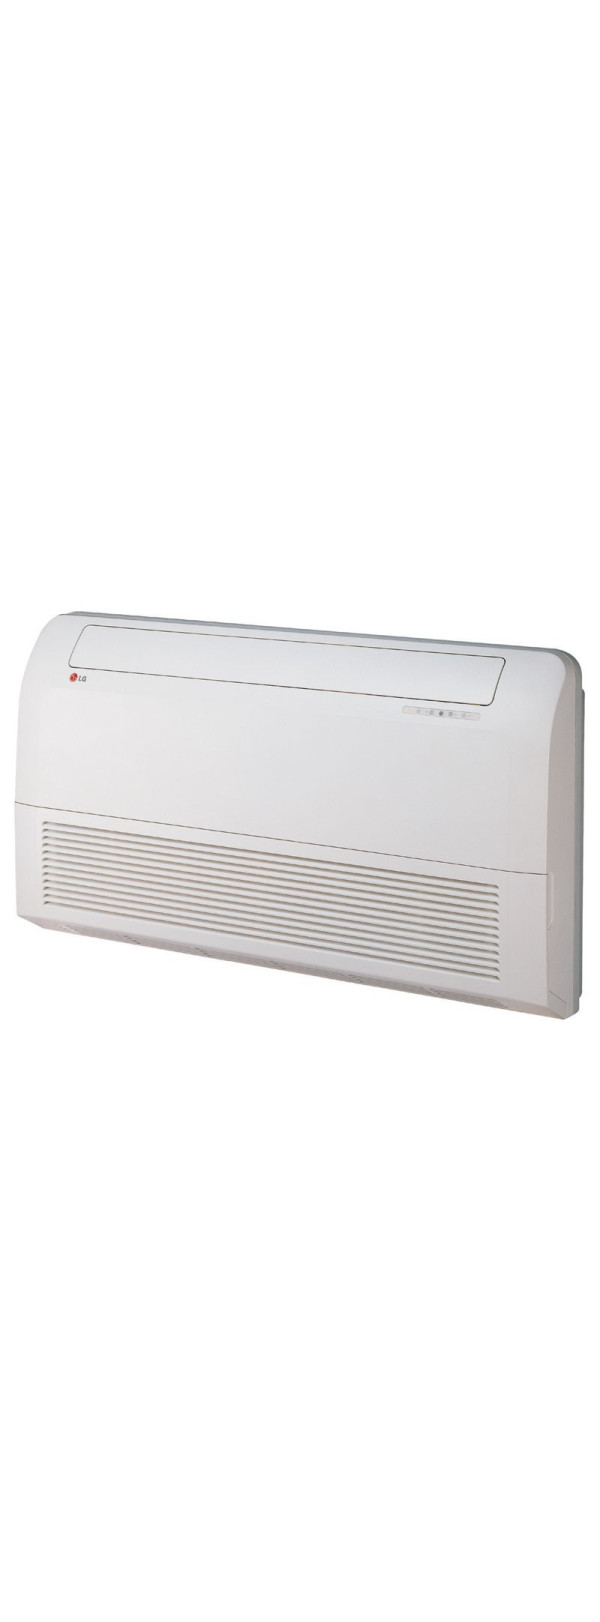 Klimatizace podlahová - stropní - LG CV09.NE2 (vnitřní jednotka)